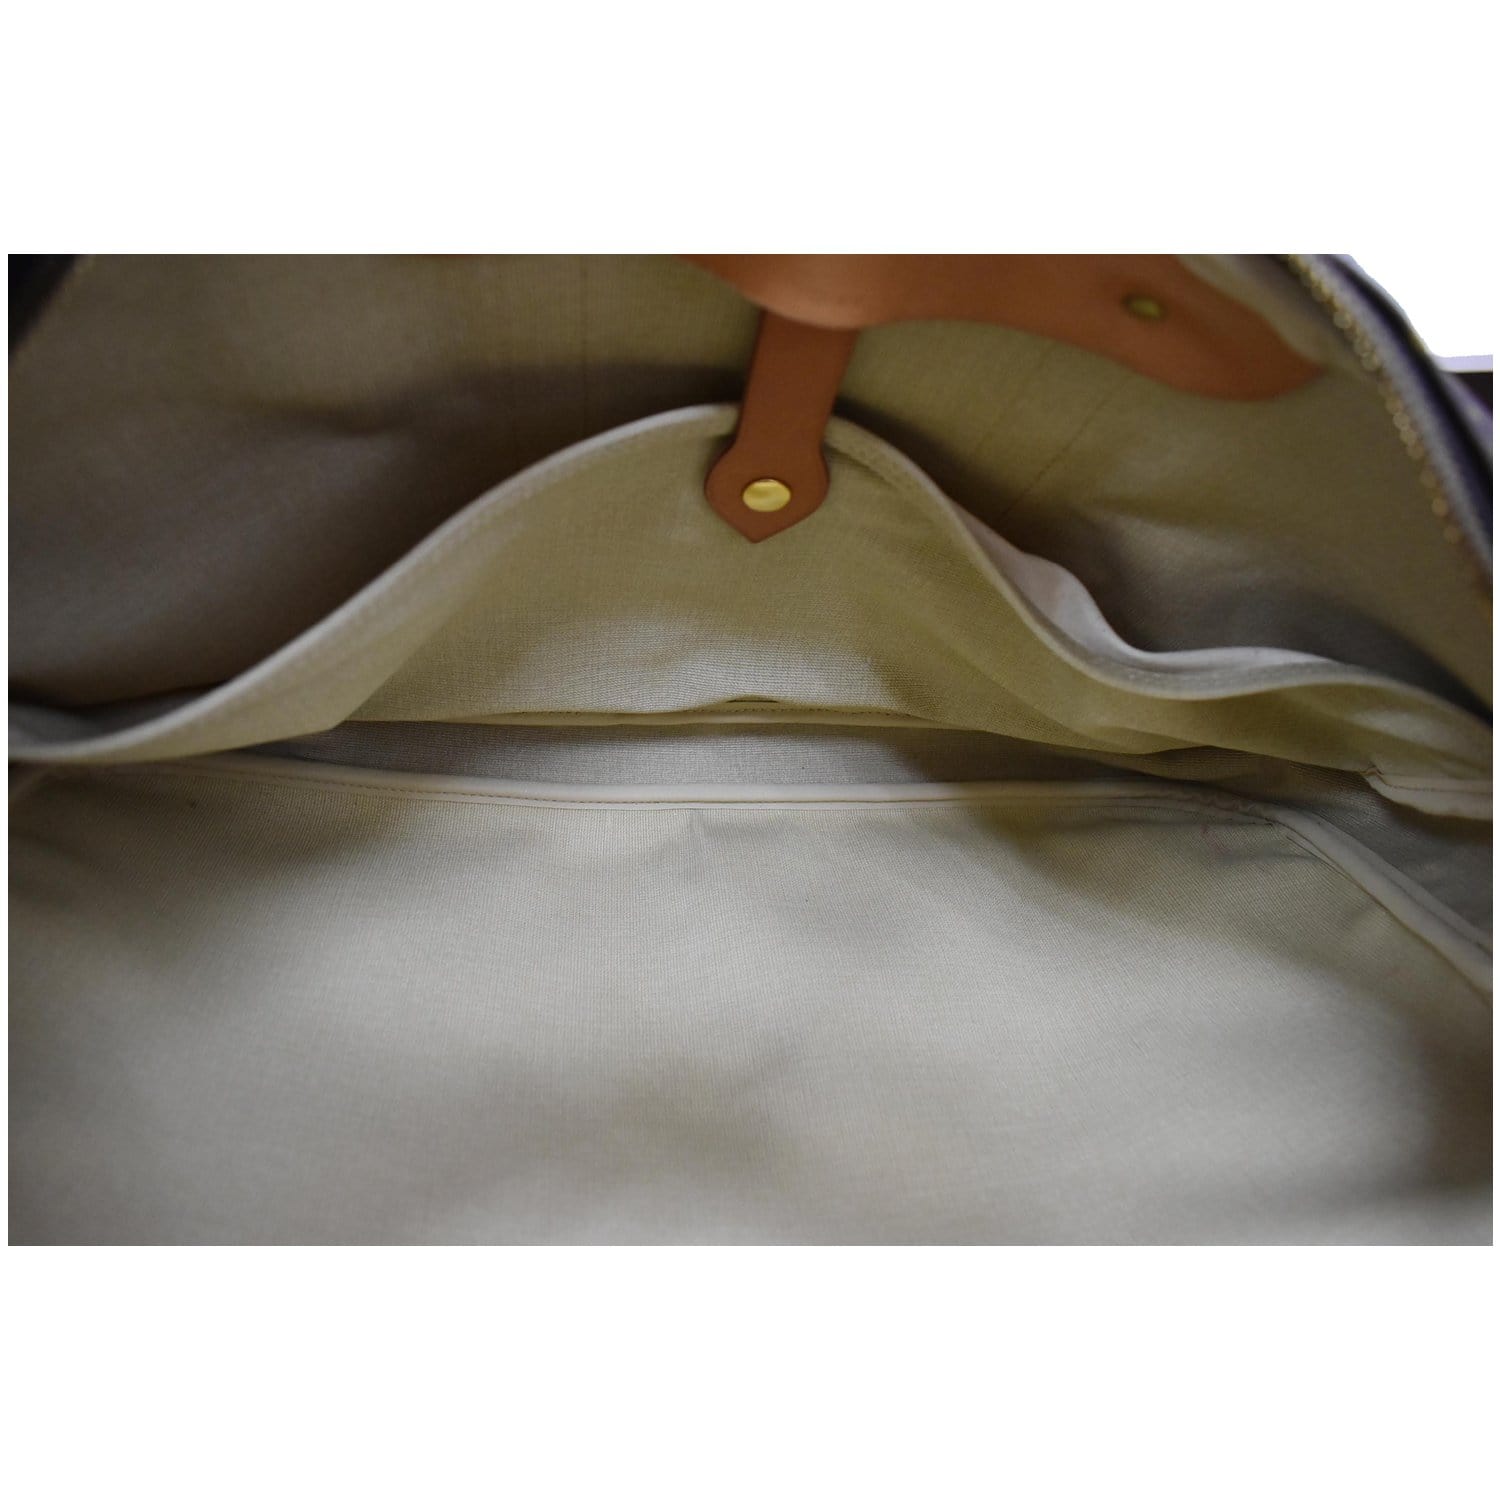 Authentic LOUIS VUITTON Sirius 45 Monogram Suitcase Travel Business Bag  #53114